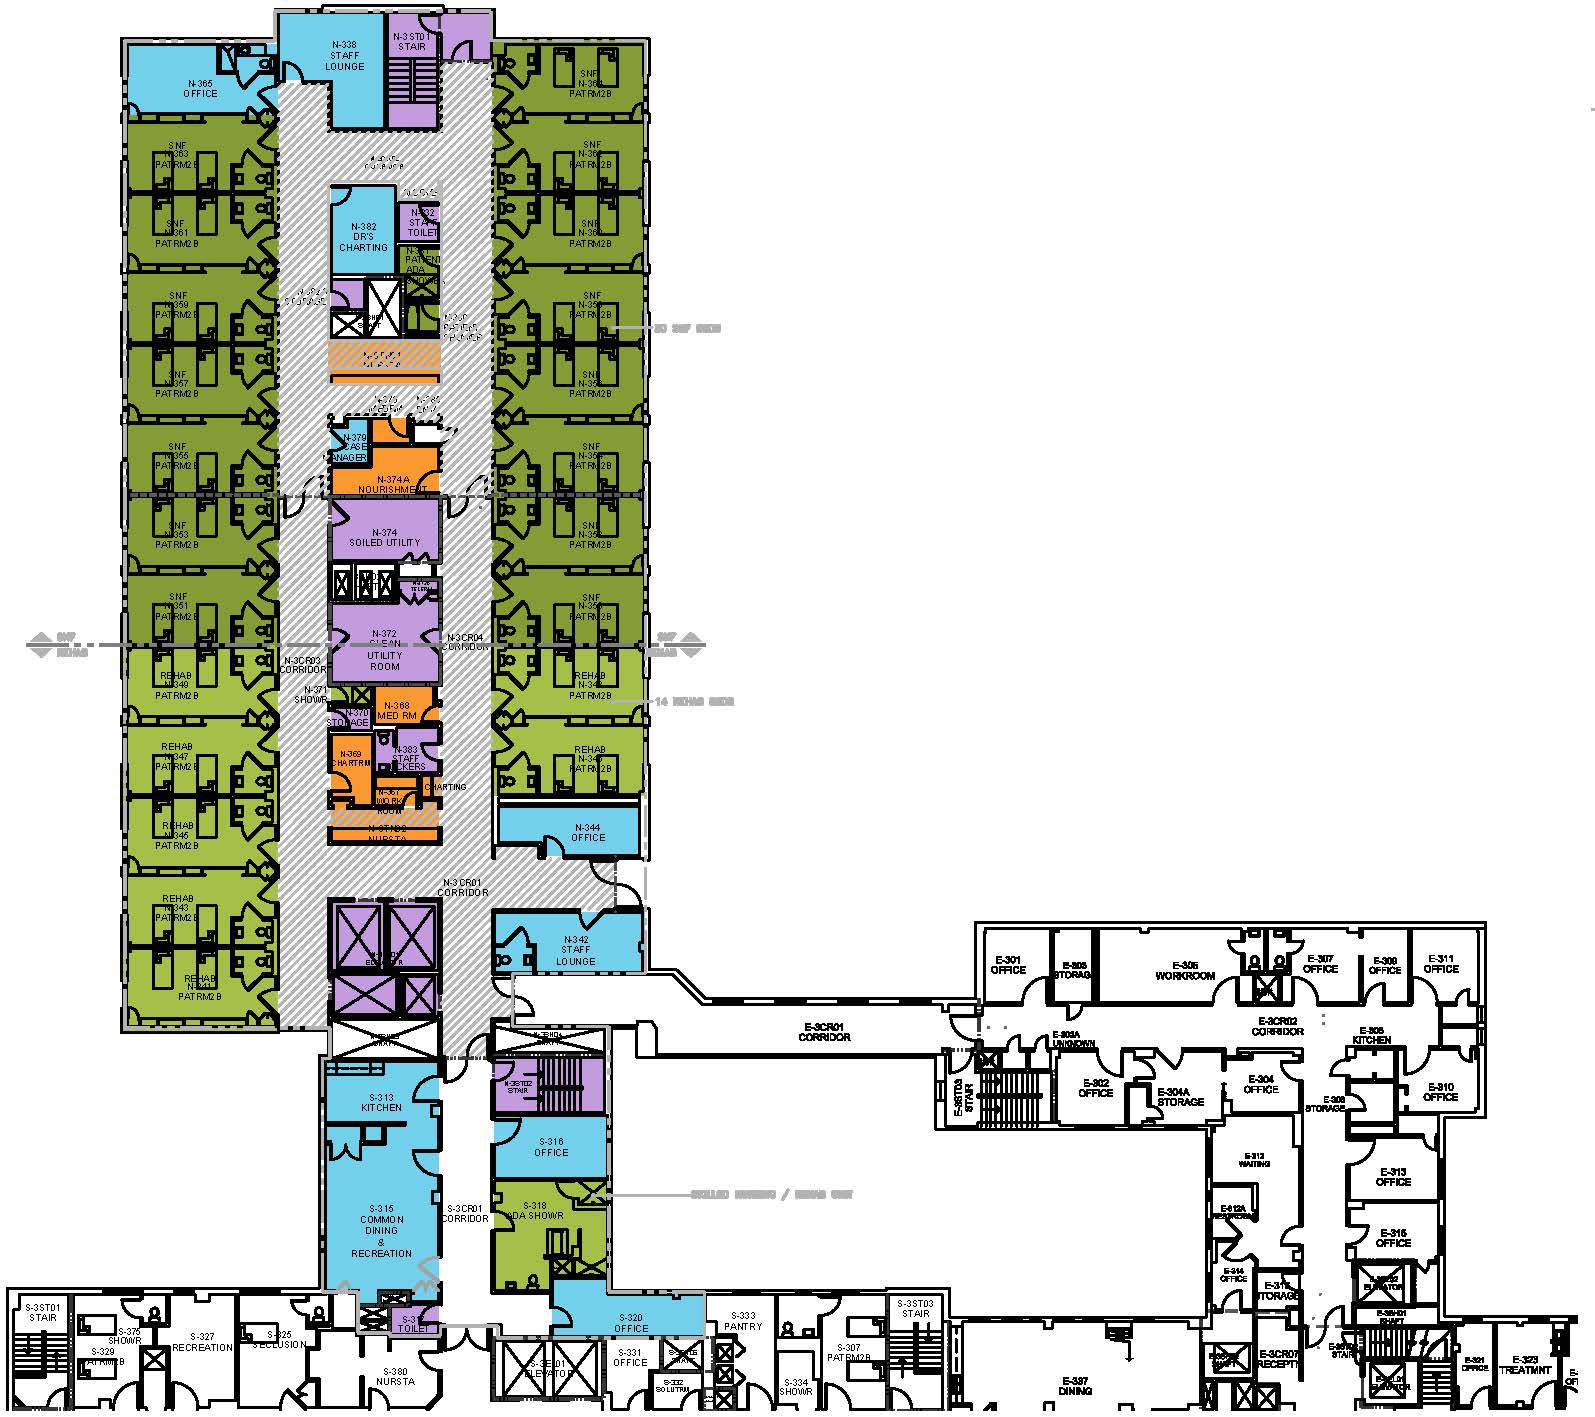 3rd Floor Plan Sheet-30x42.jpg